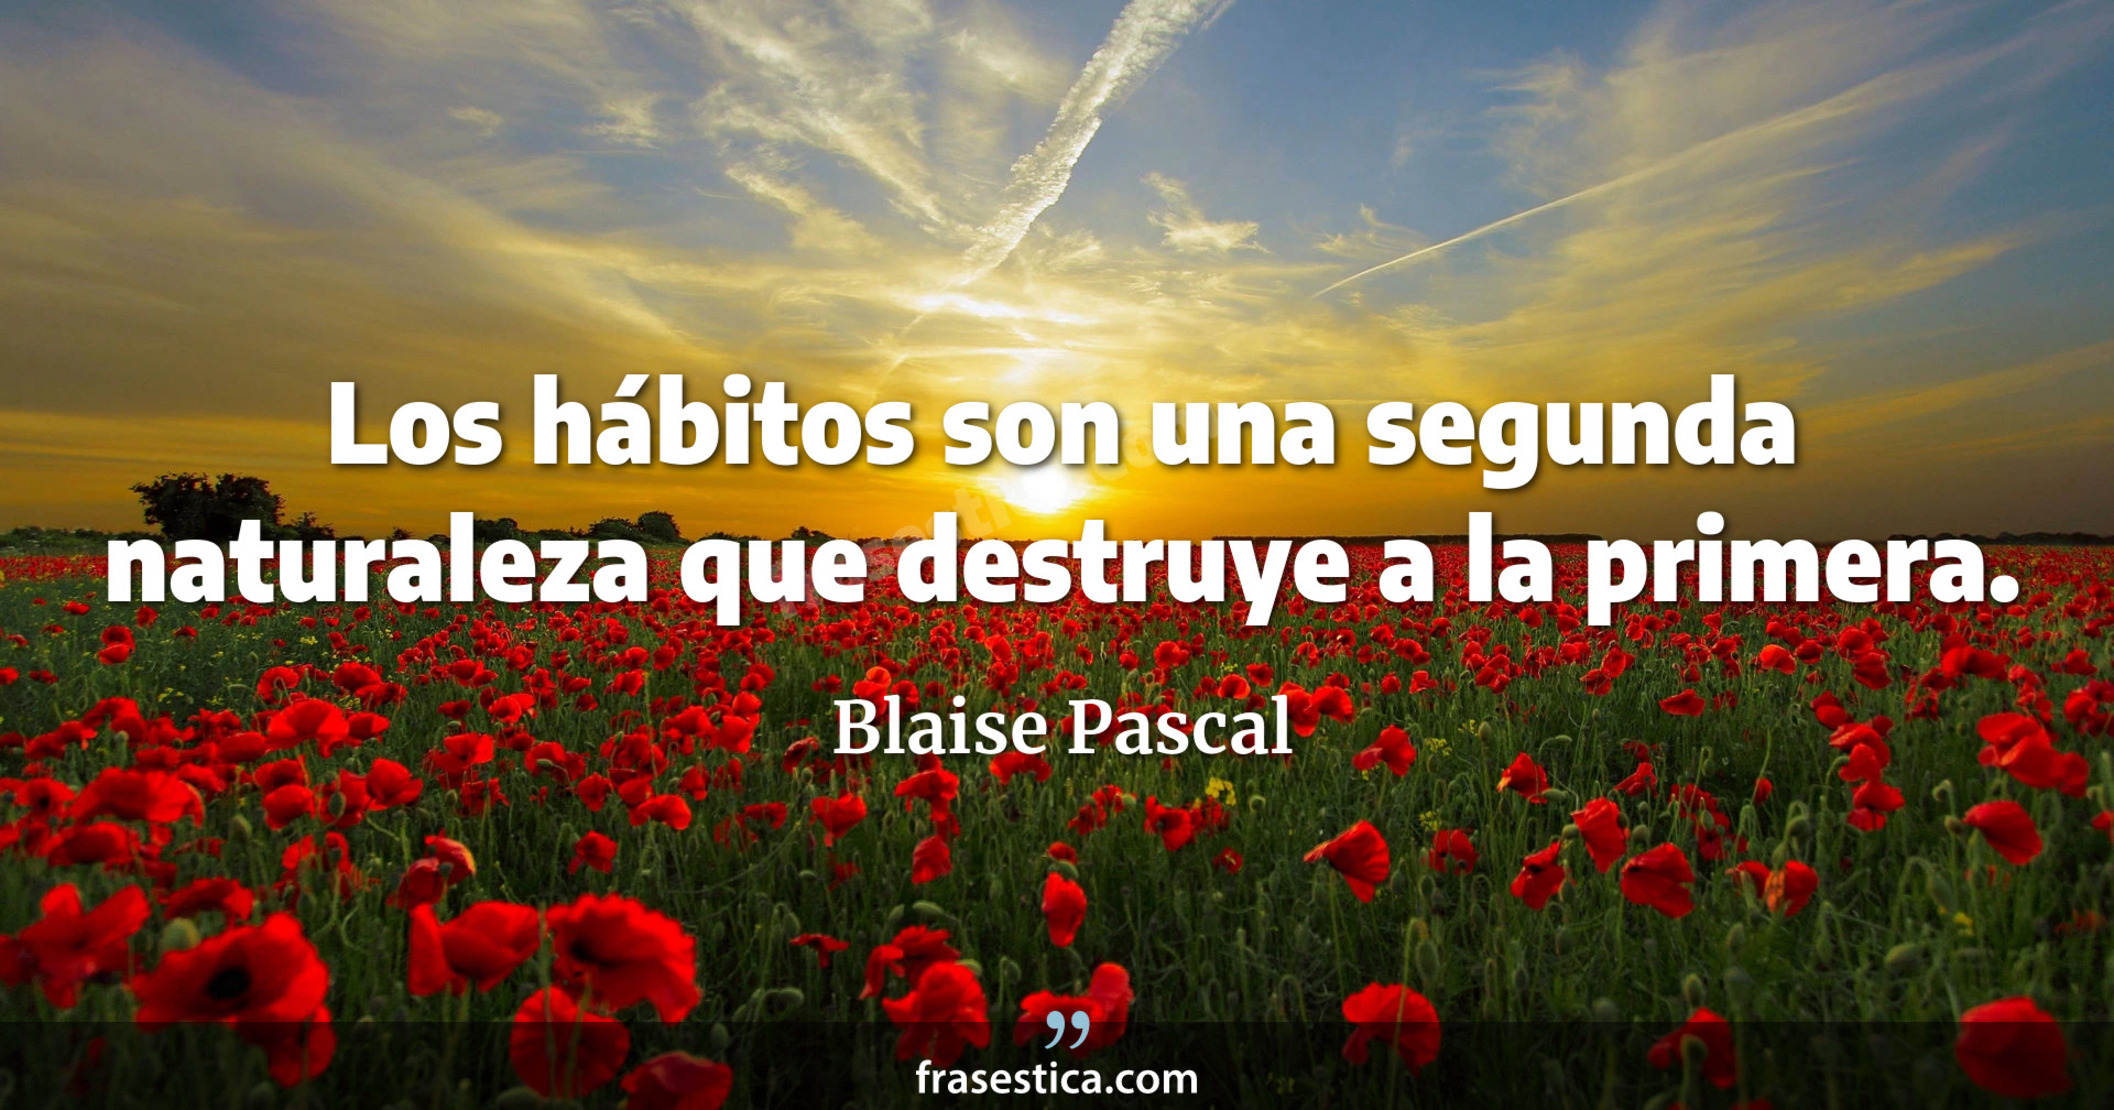 Los hábitos son una segunda naturaleza que destruye a la primera. - Blaise Pascal